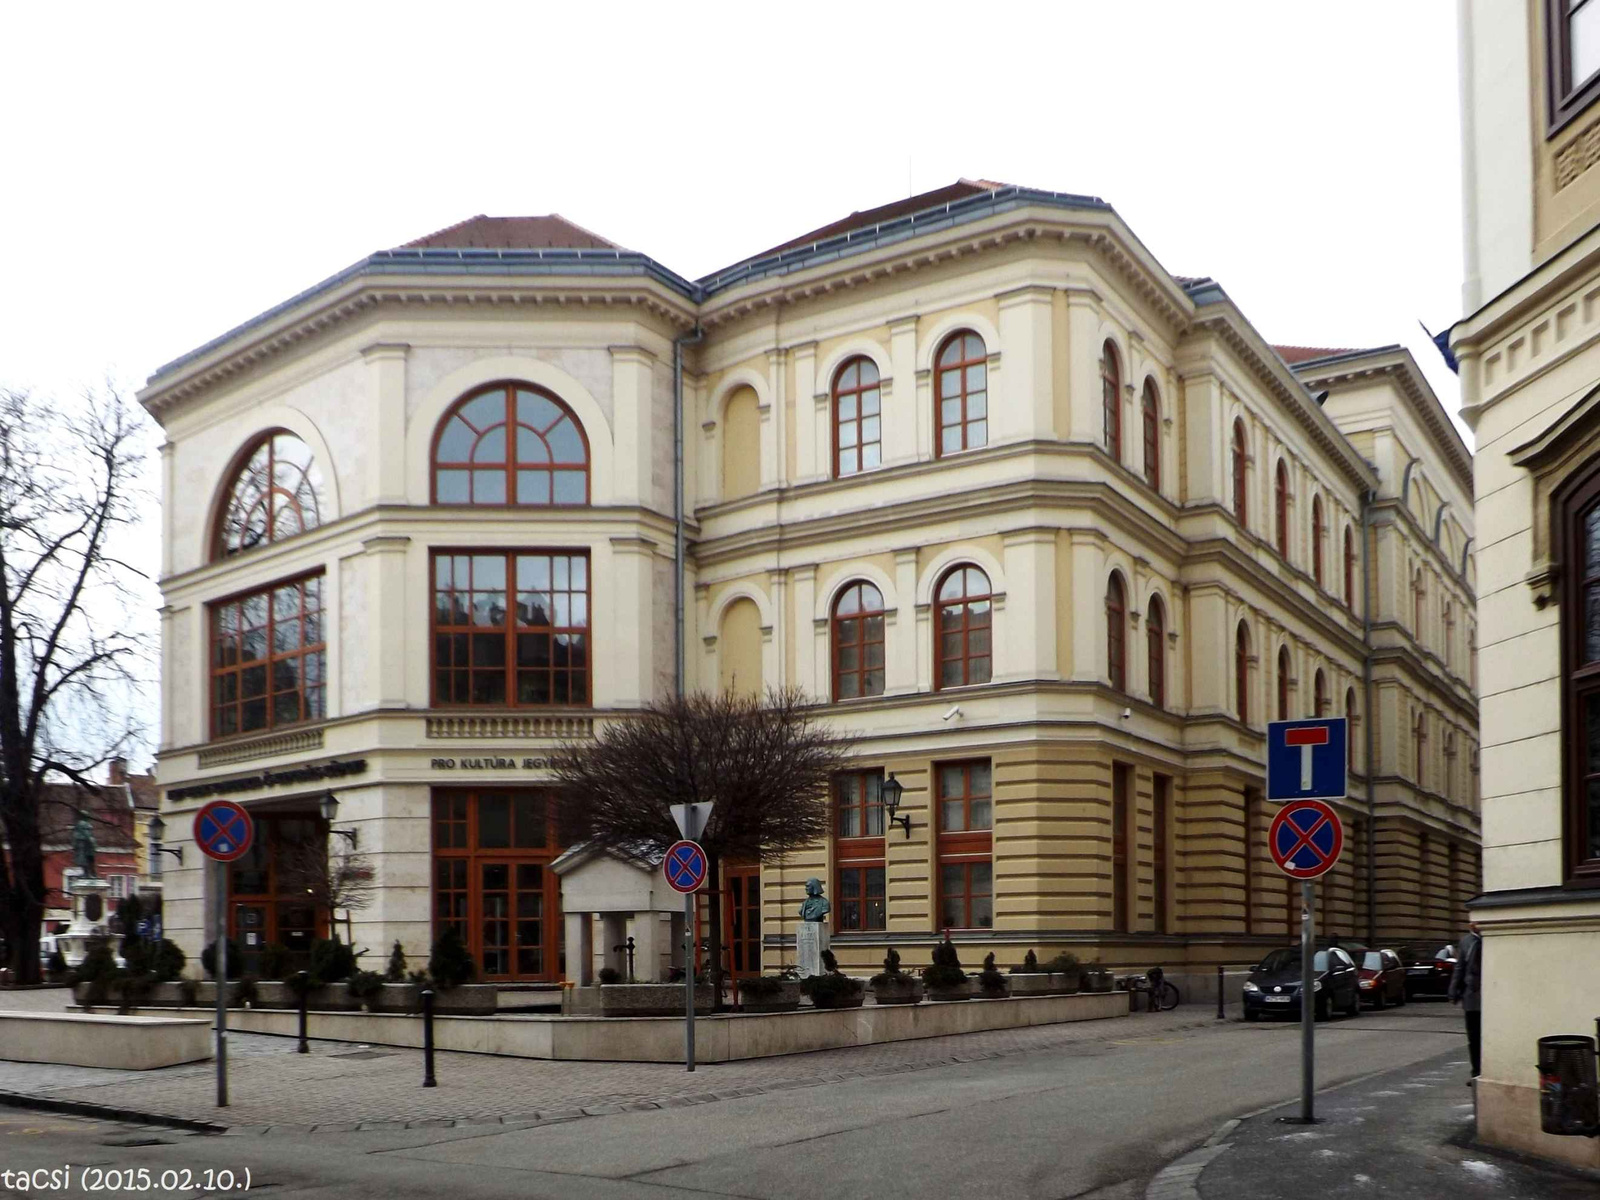 Konferencia központ és Liszt Ferenc utca torkolata